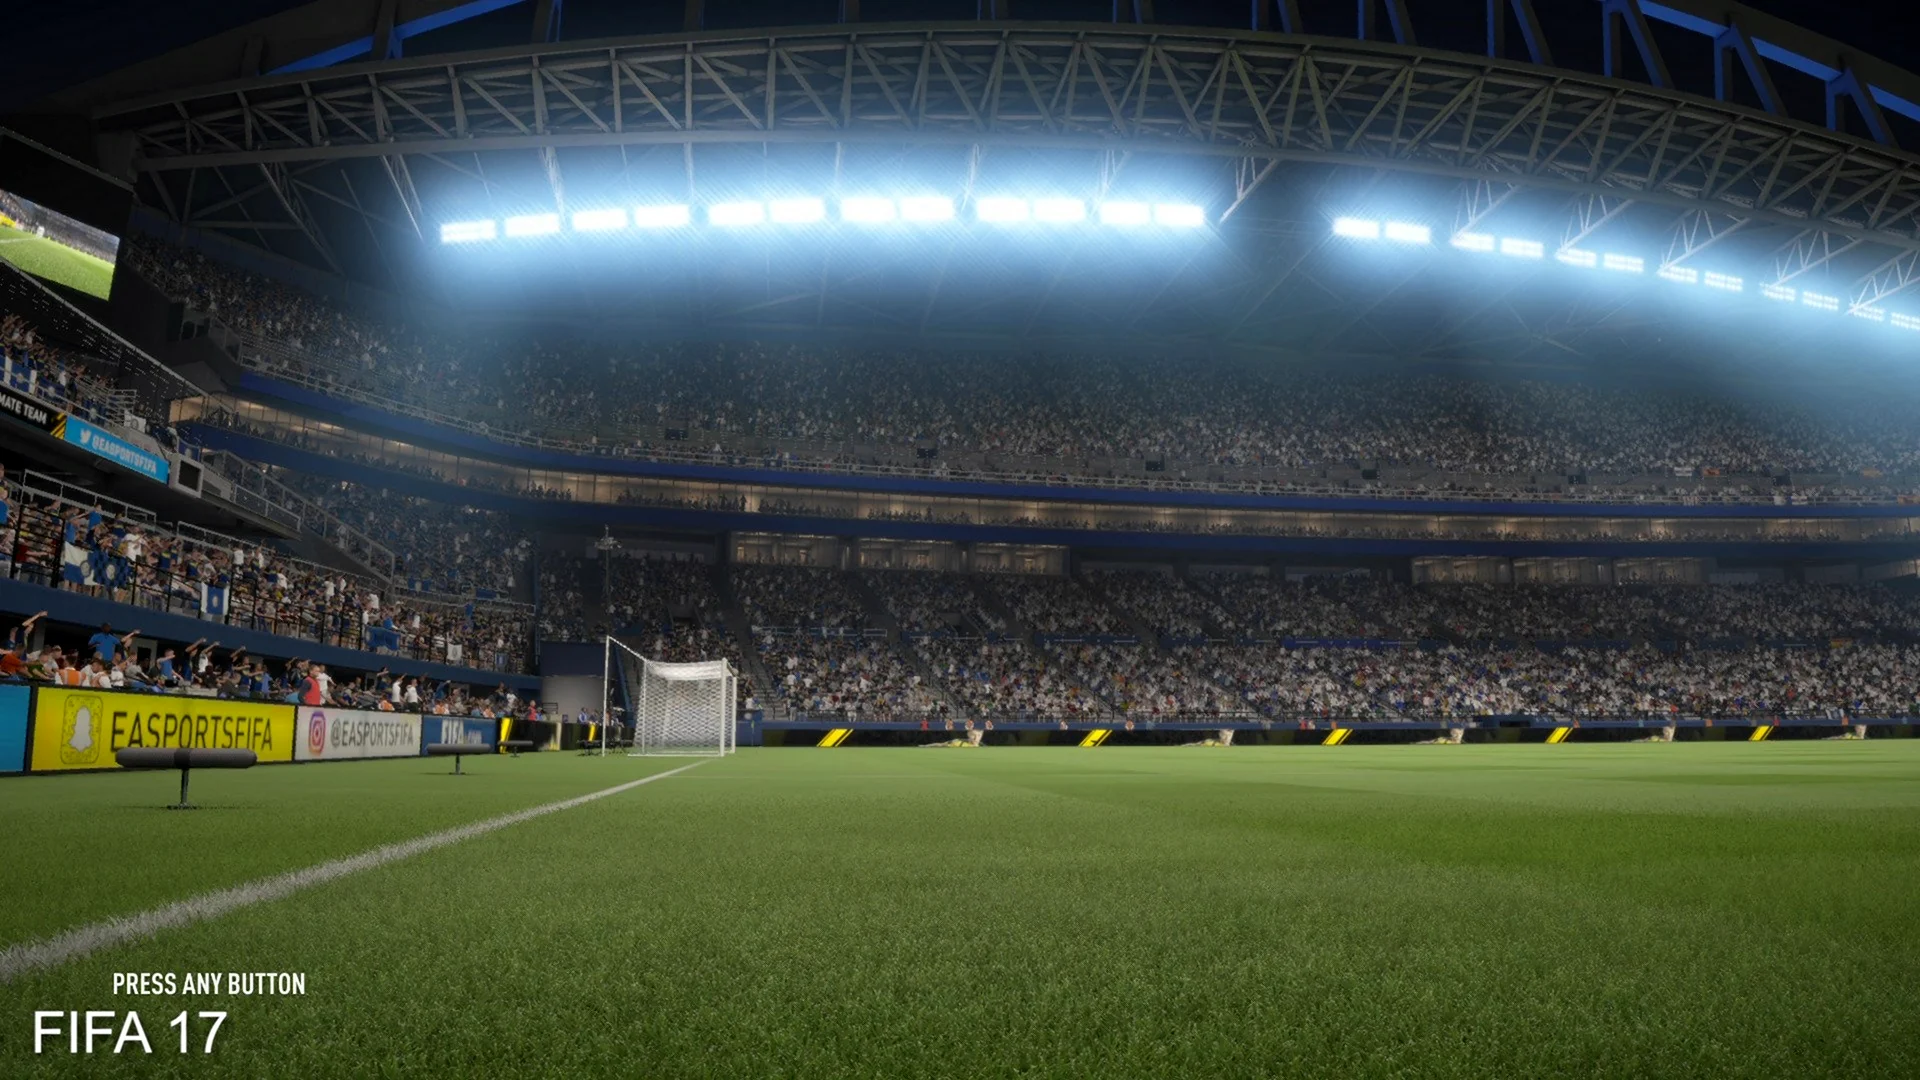 FIFA online 4 стадионы